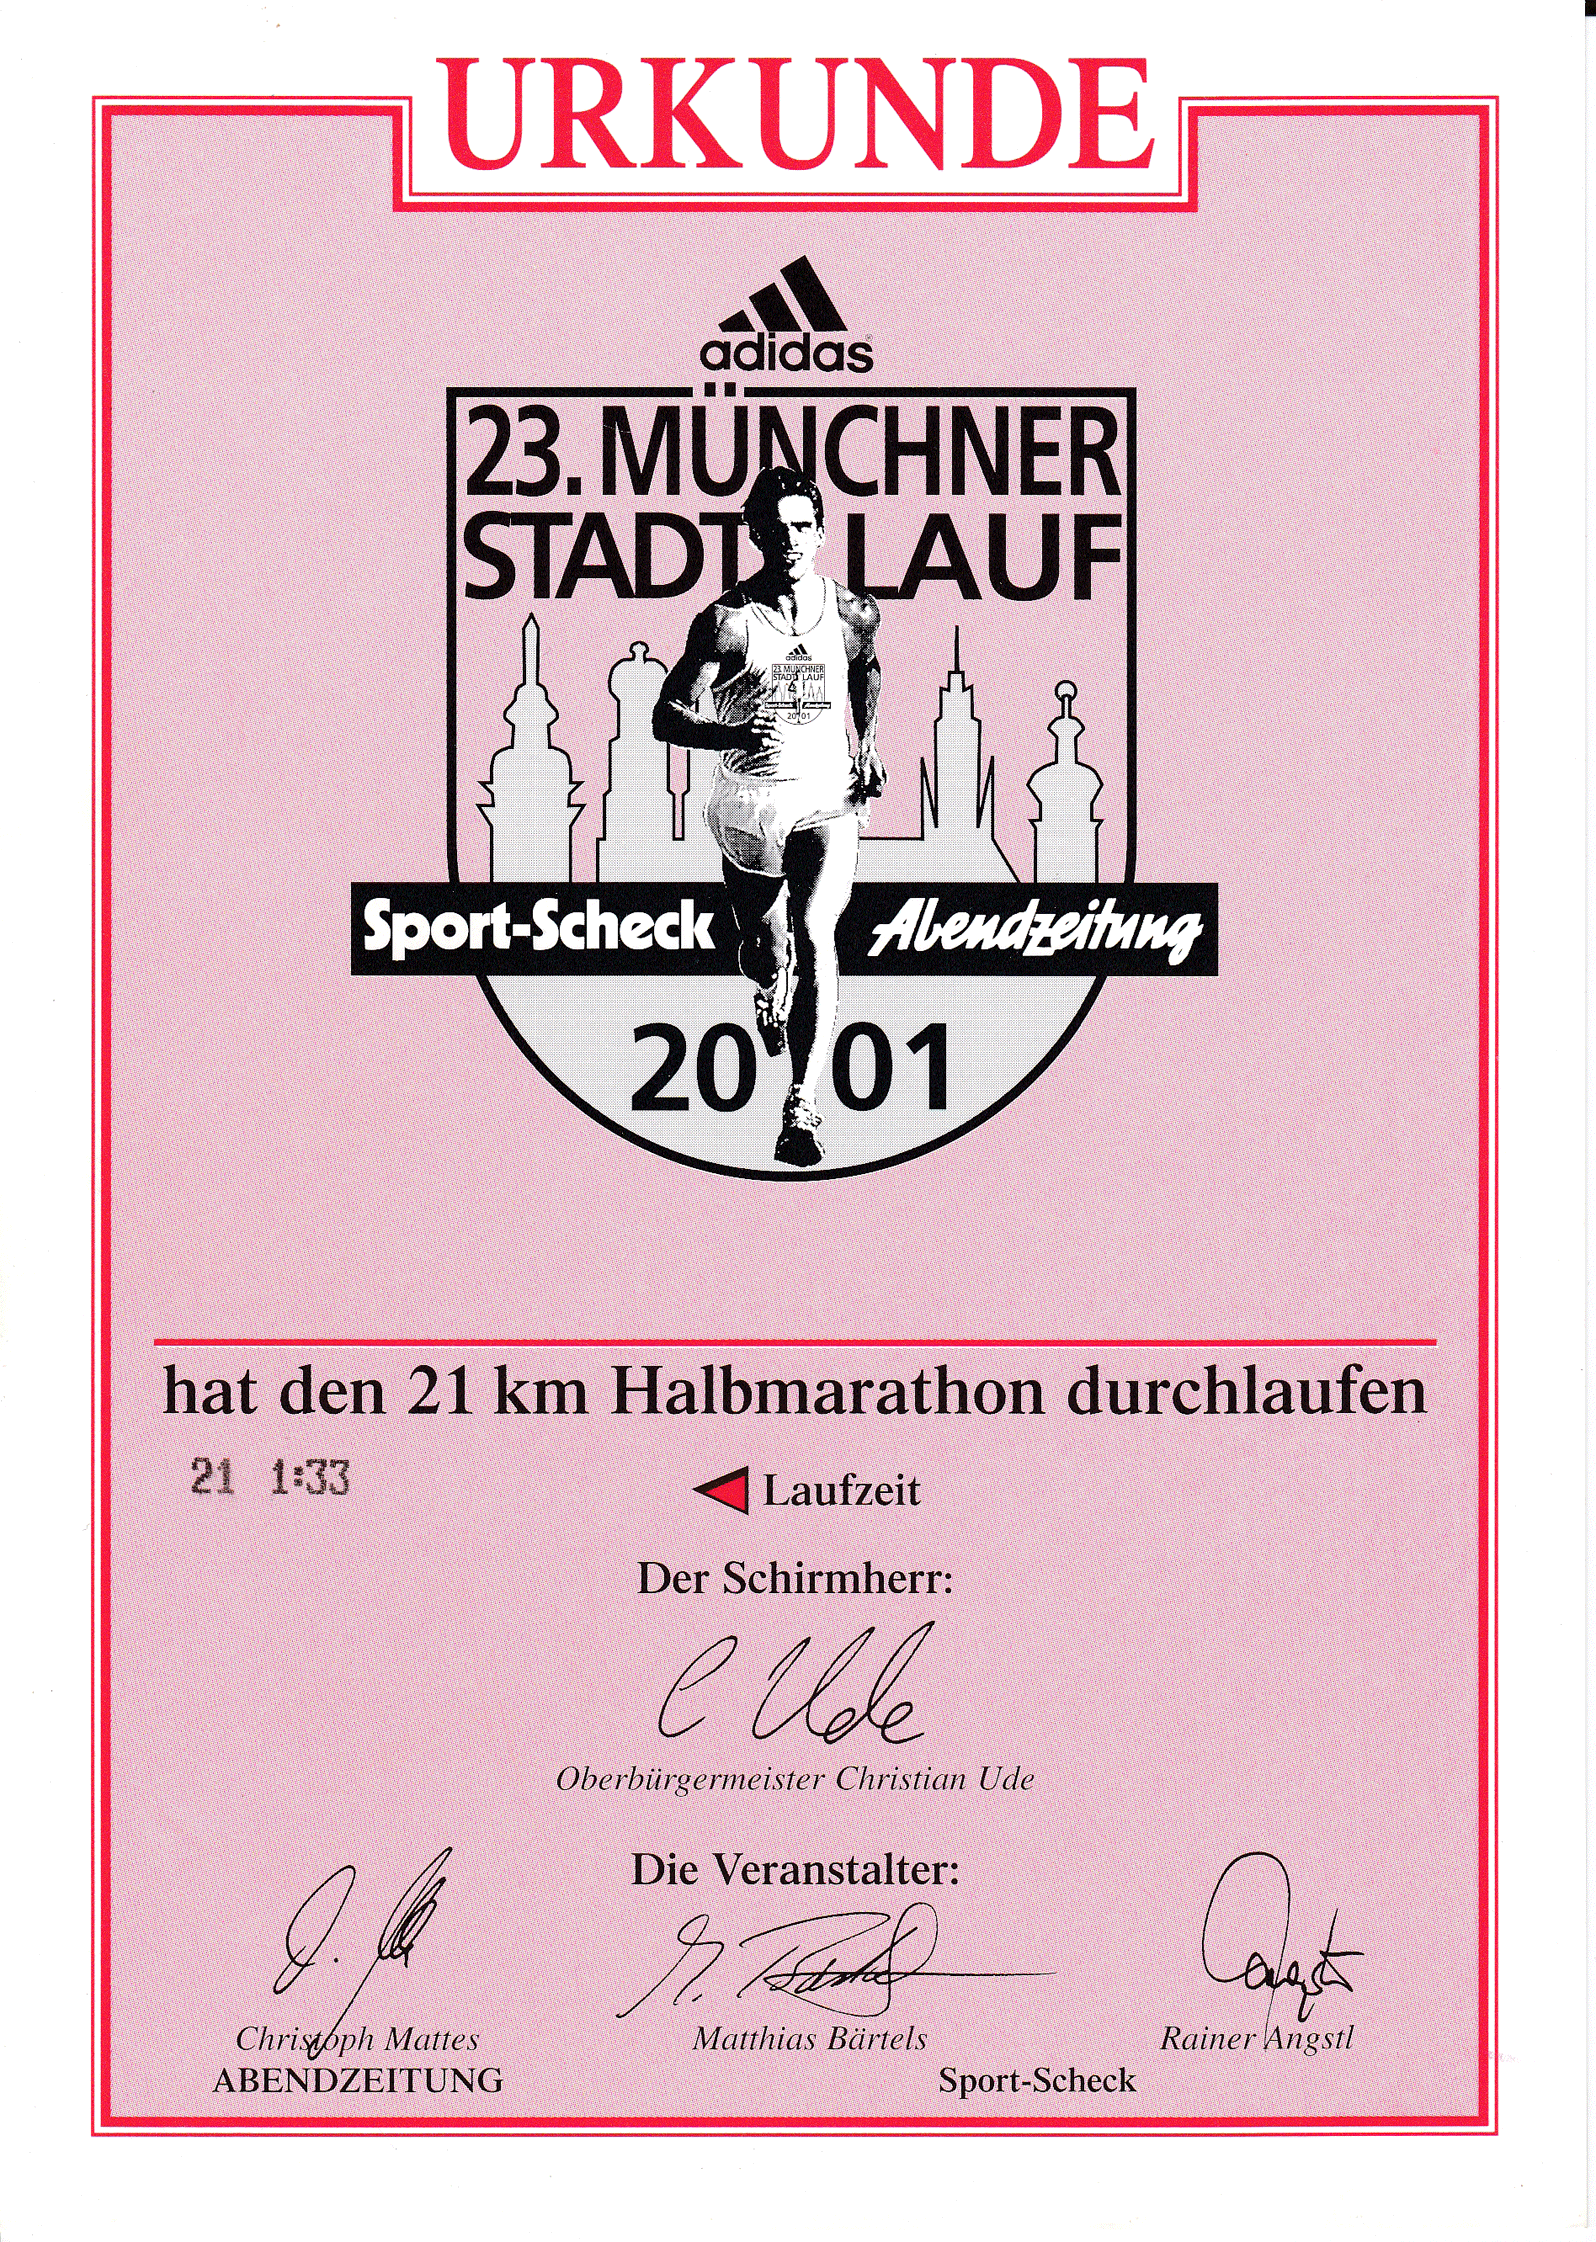 Urkunde-Stadtlauf-2001